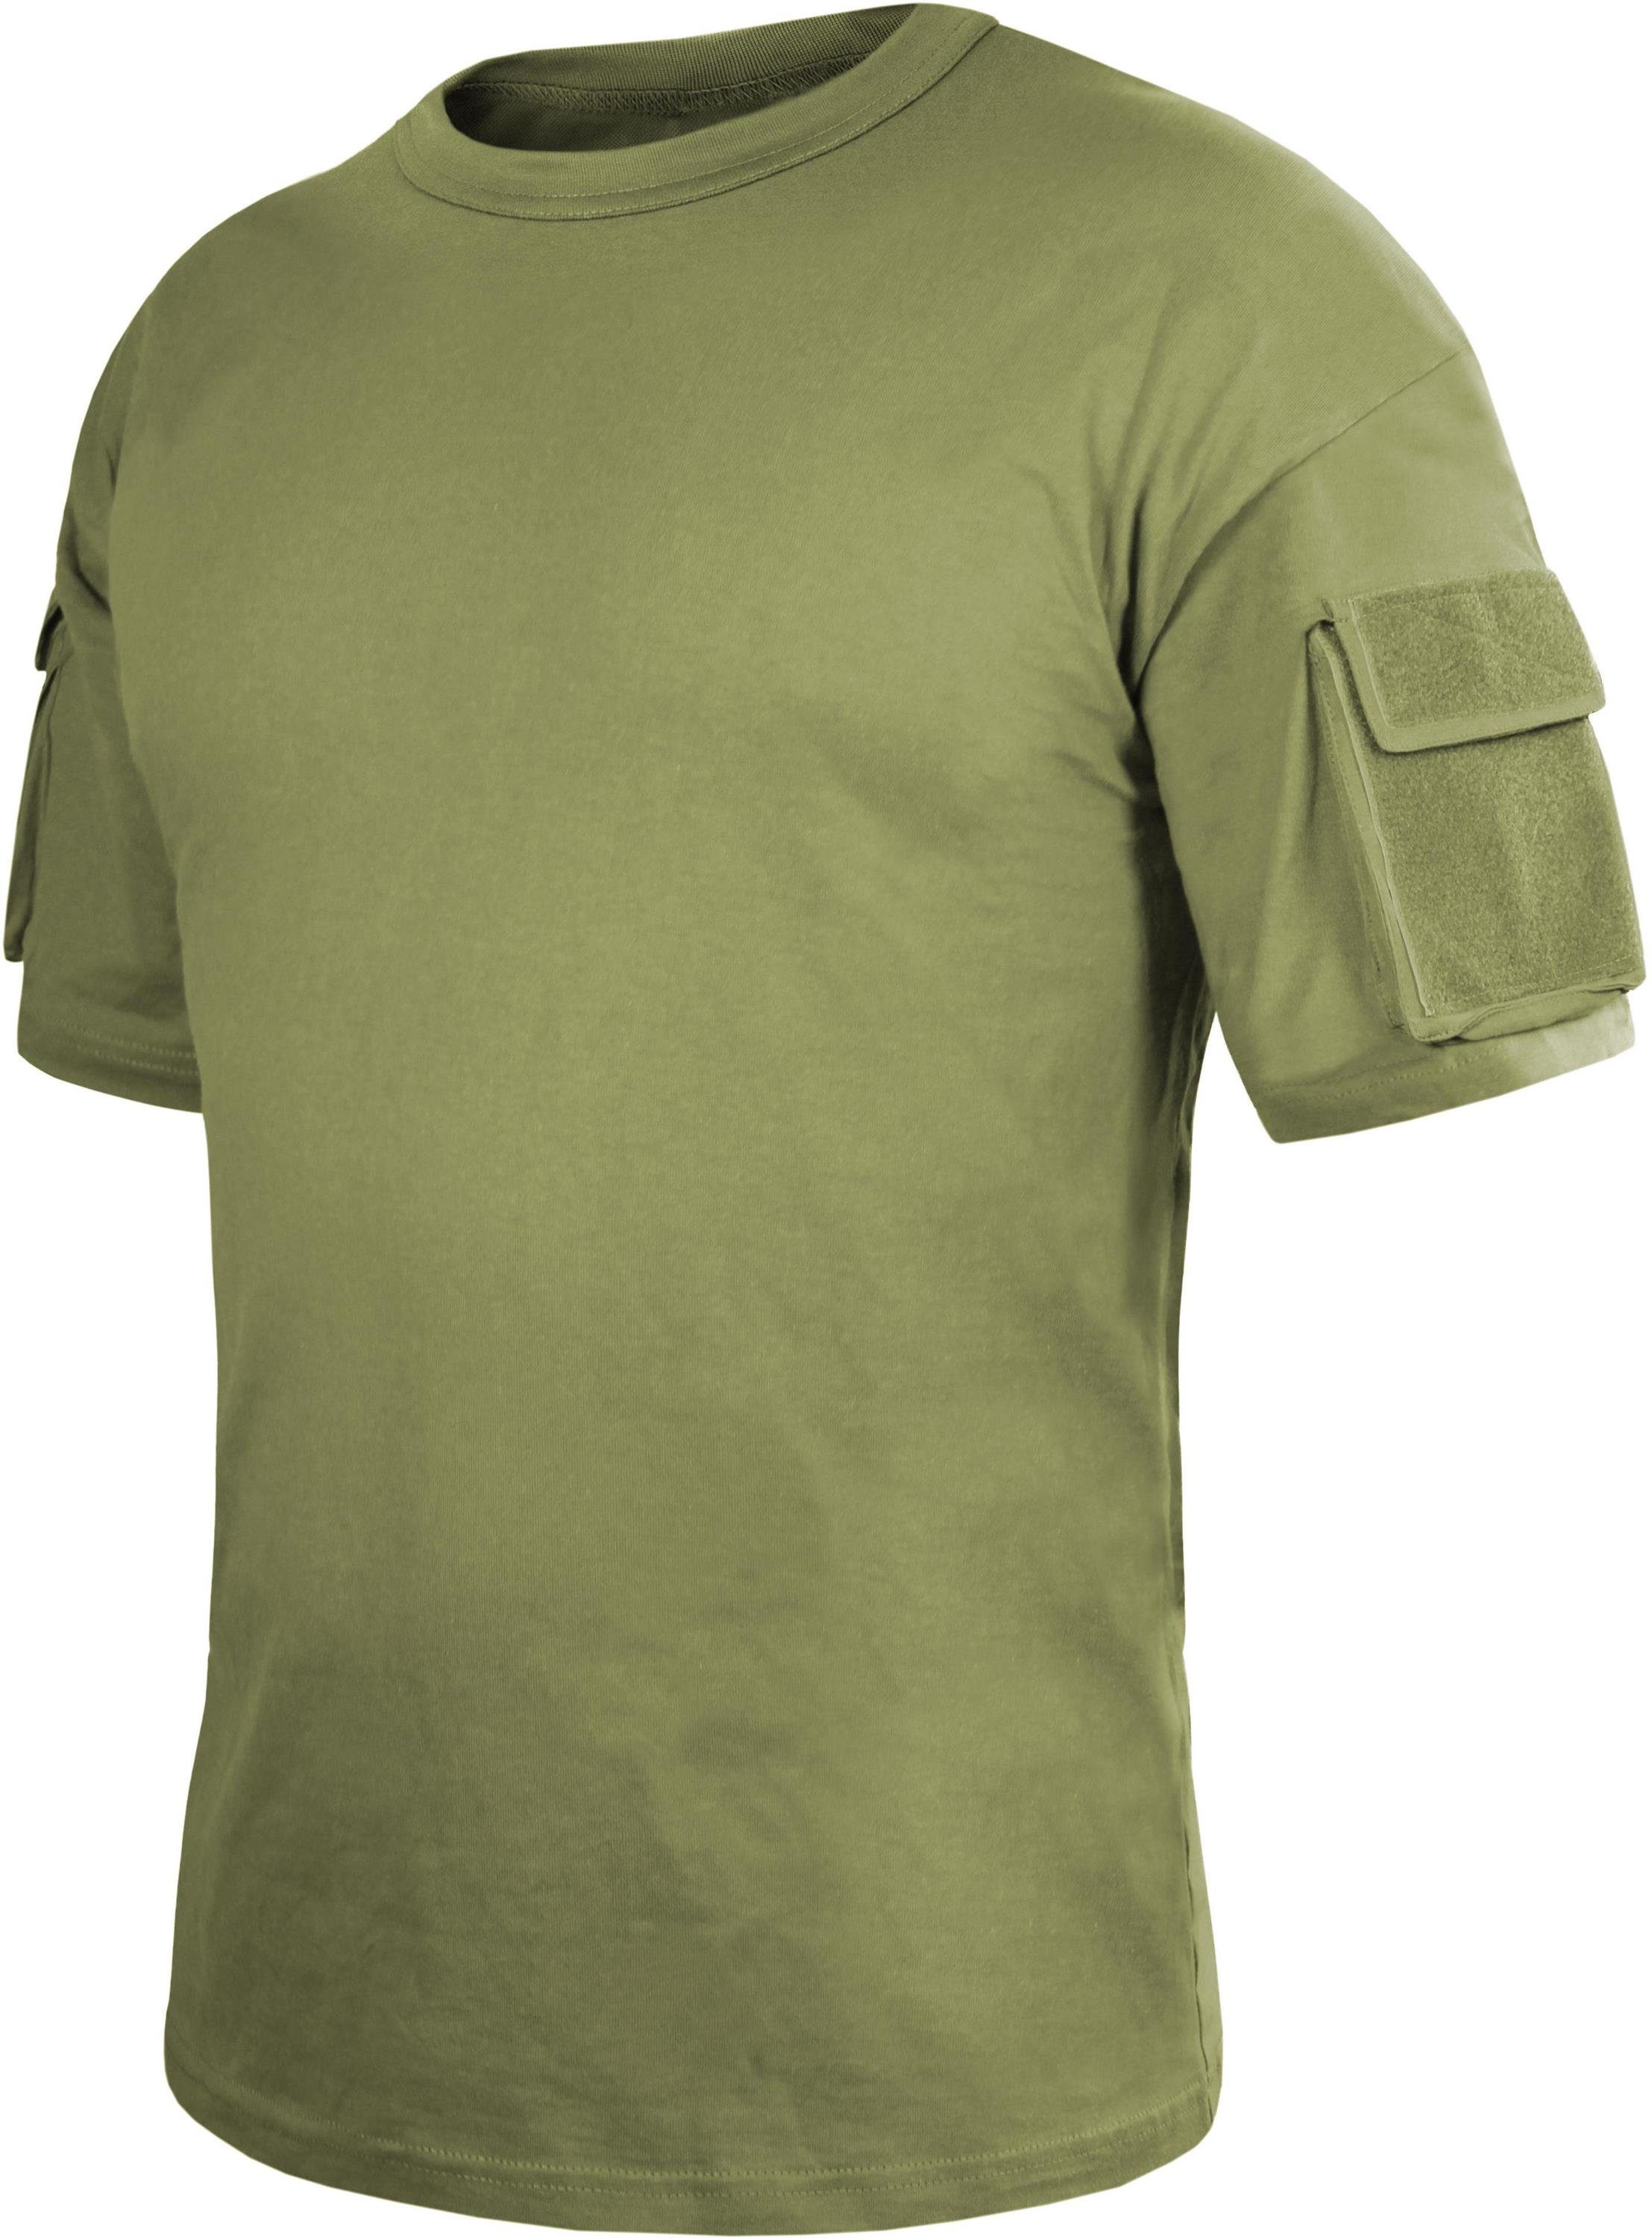 normani Funktionsshirt Herren Taktisches T-Shirt Instructor Sommershirt mit Klett-Ärmeltaschen Tactical Tropenhemd Oliv | Funktionsshirts